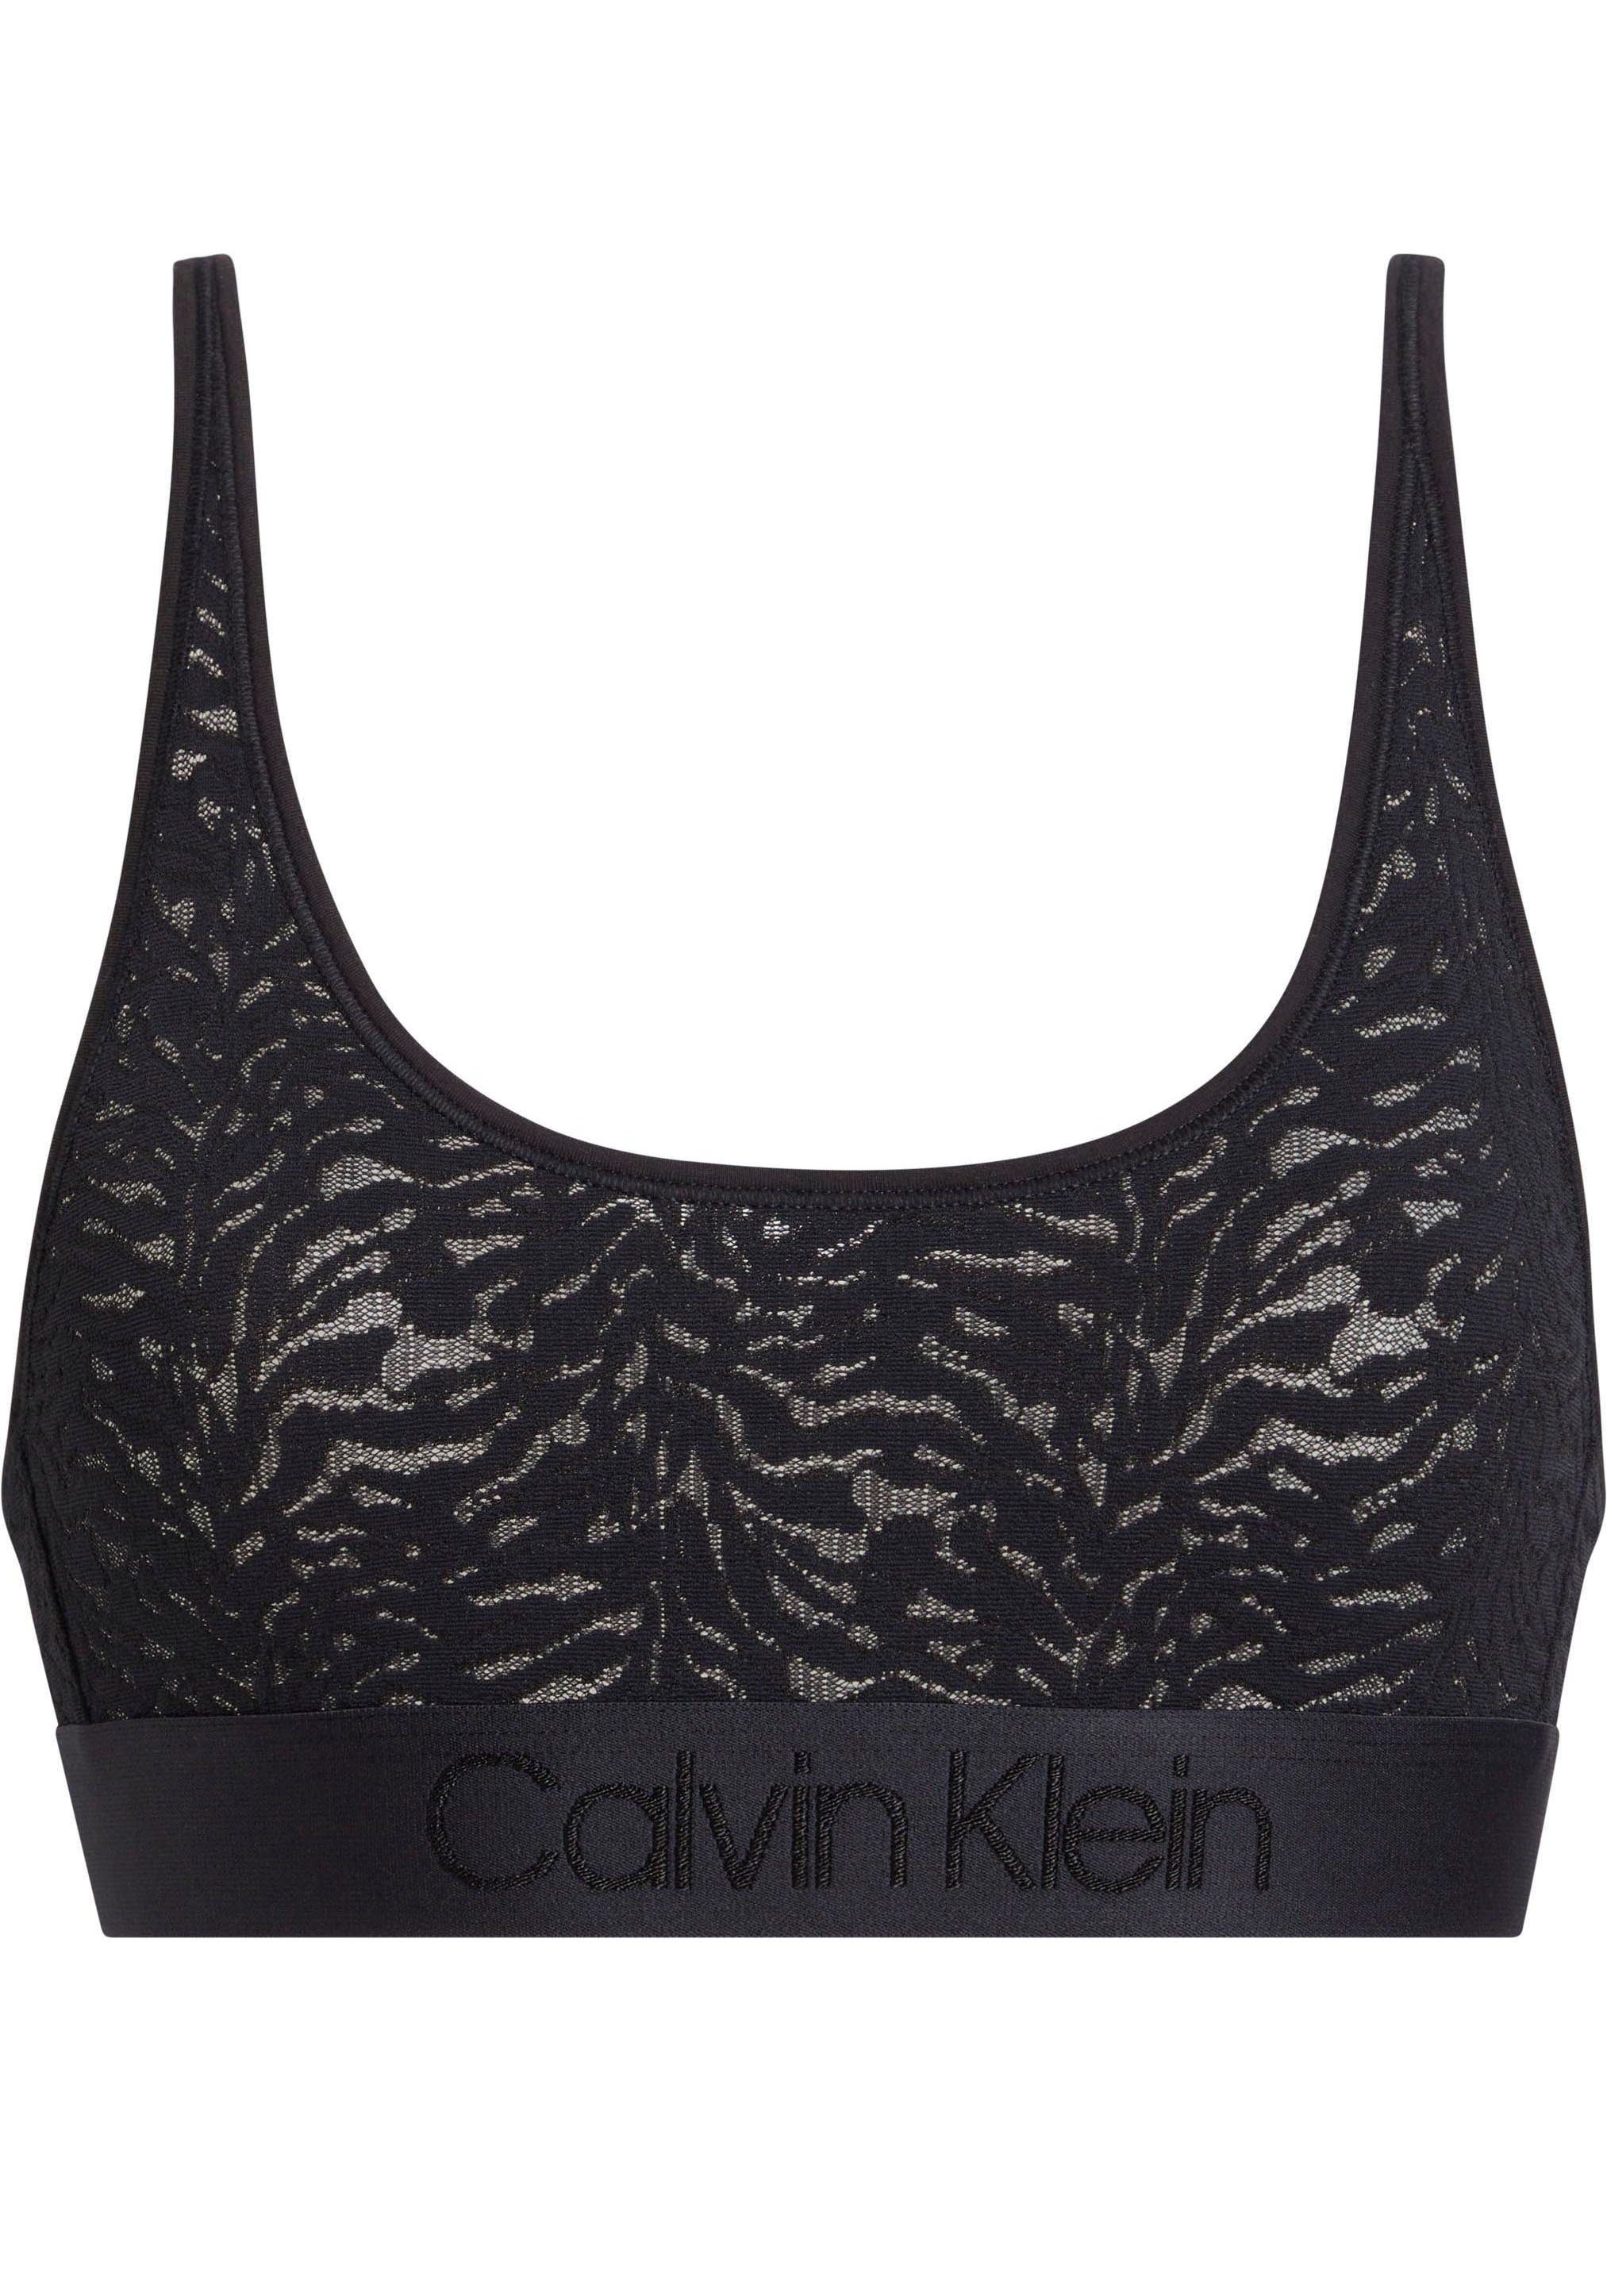 BRALETTE Calvin aus Underwear Spitze Bralette-BH Klein UNLINED BLACK